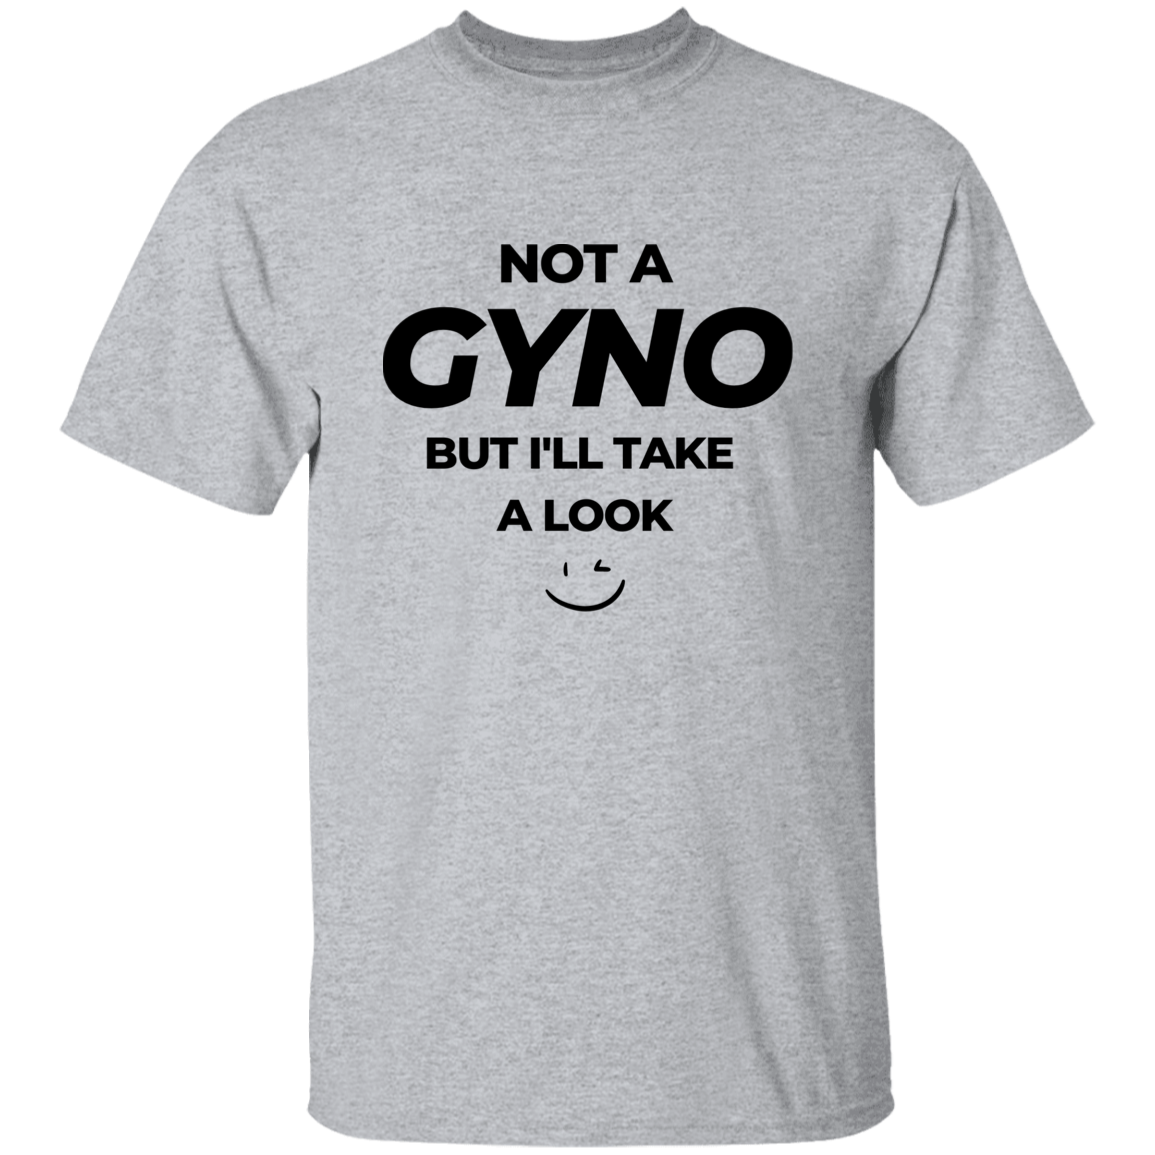 NOT A GYNO T-SHIRT